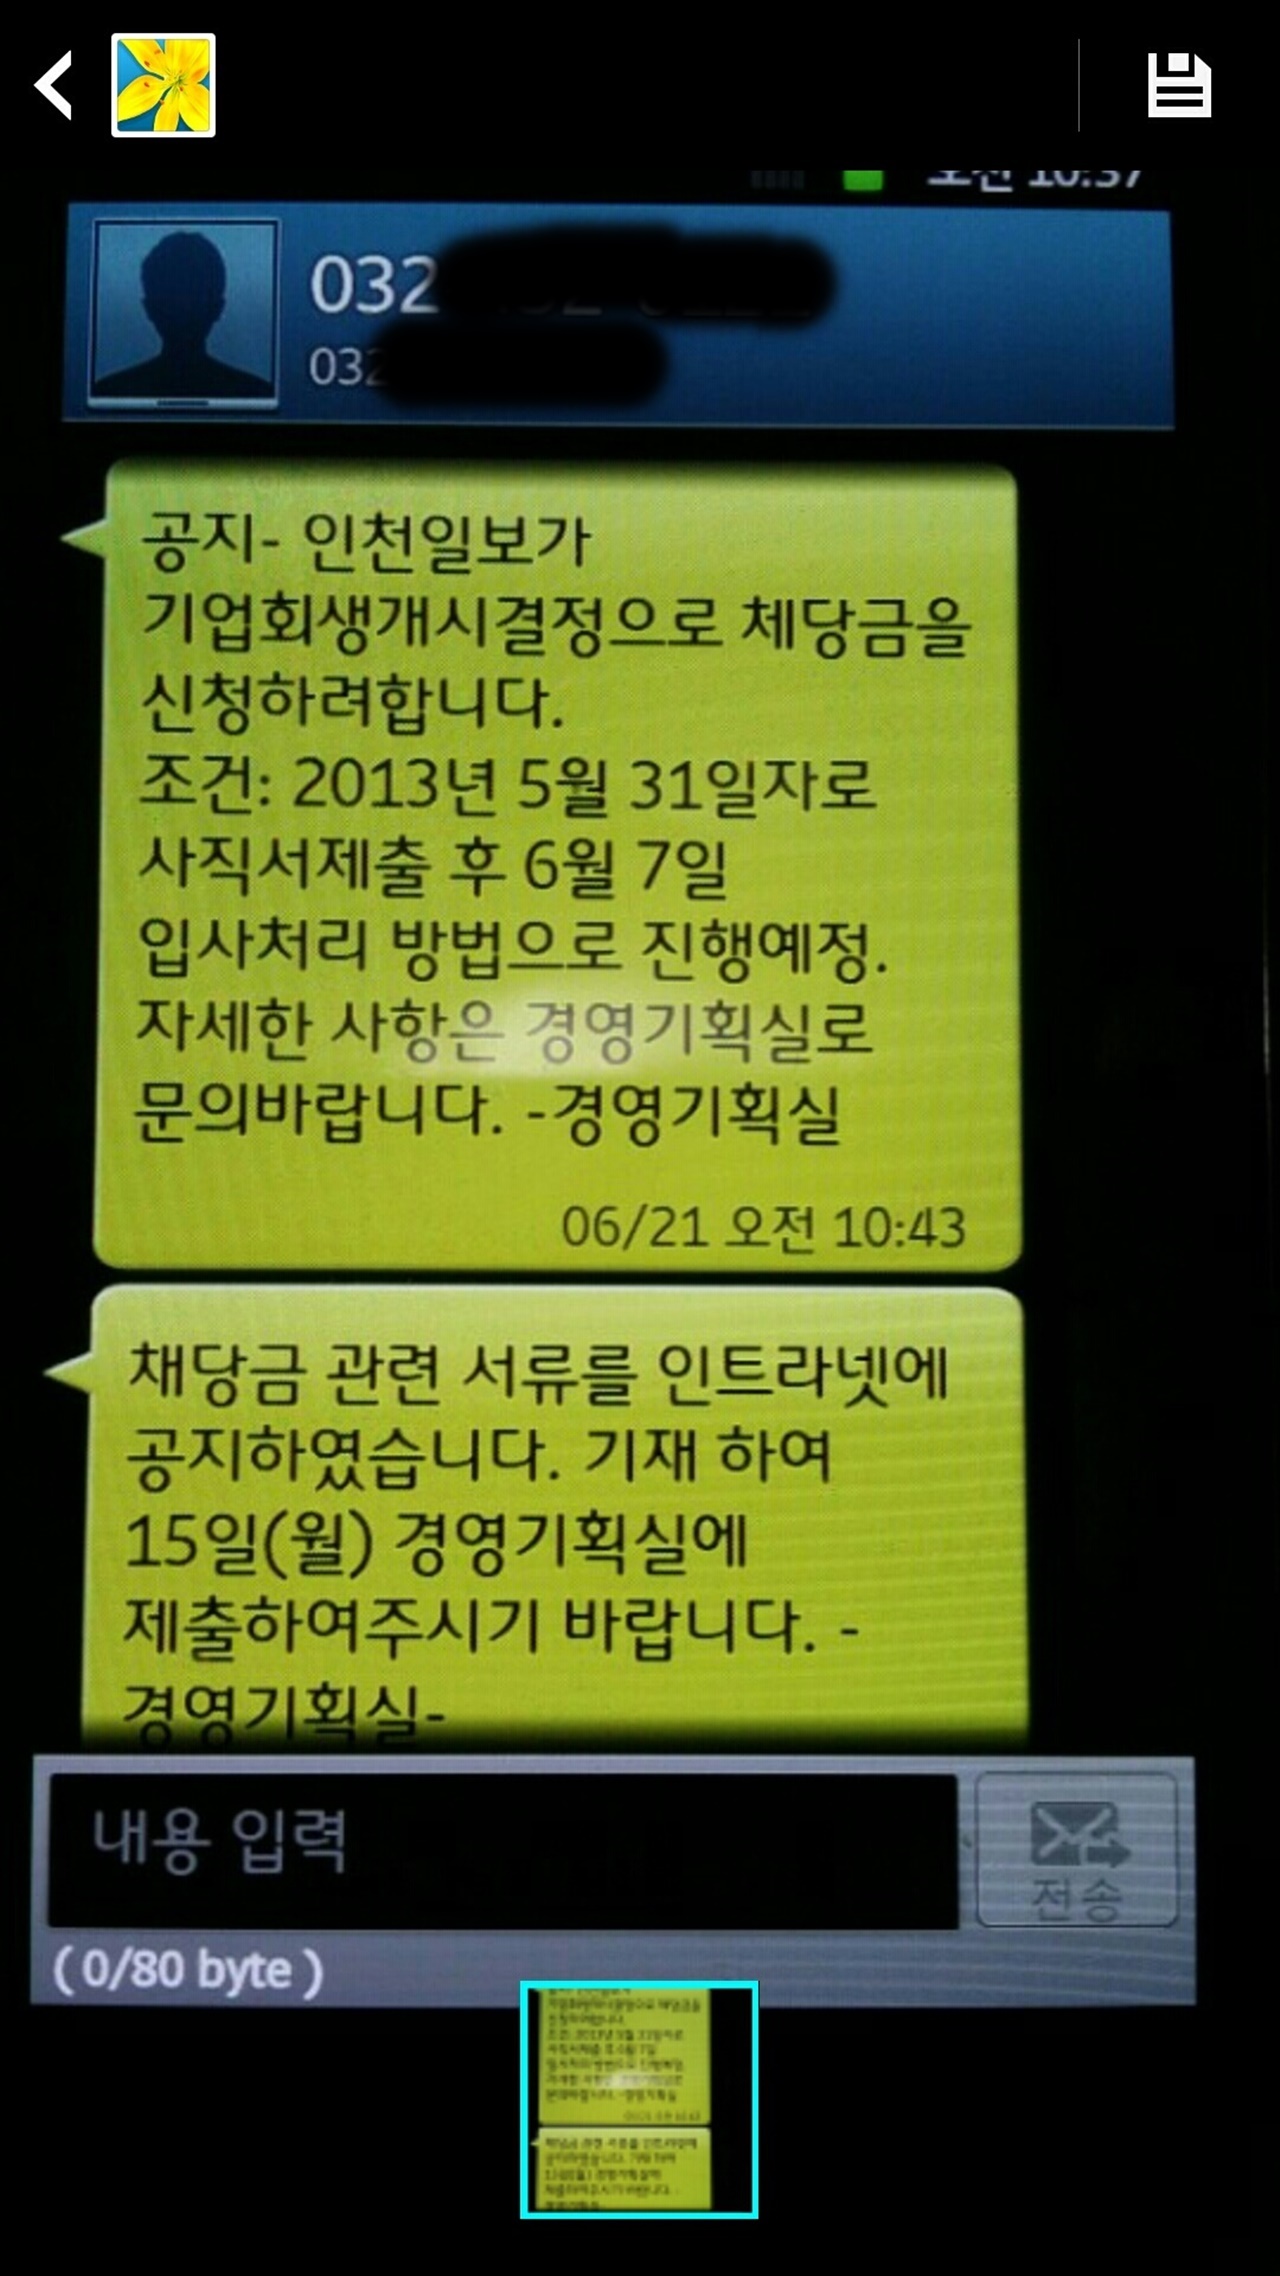 인천일보 경영기획실에서 직원들에게 발송한 체당금 신청 종용 내역 문자